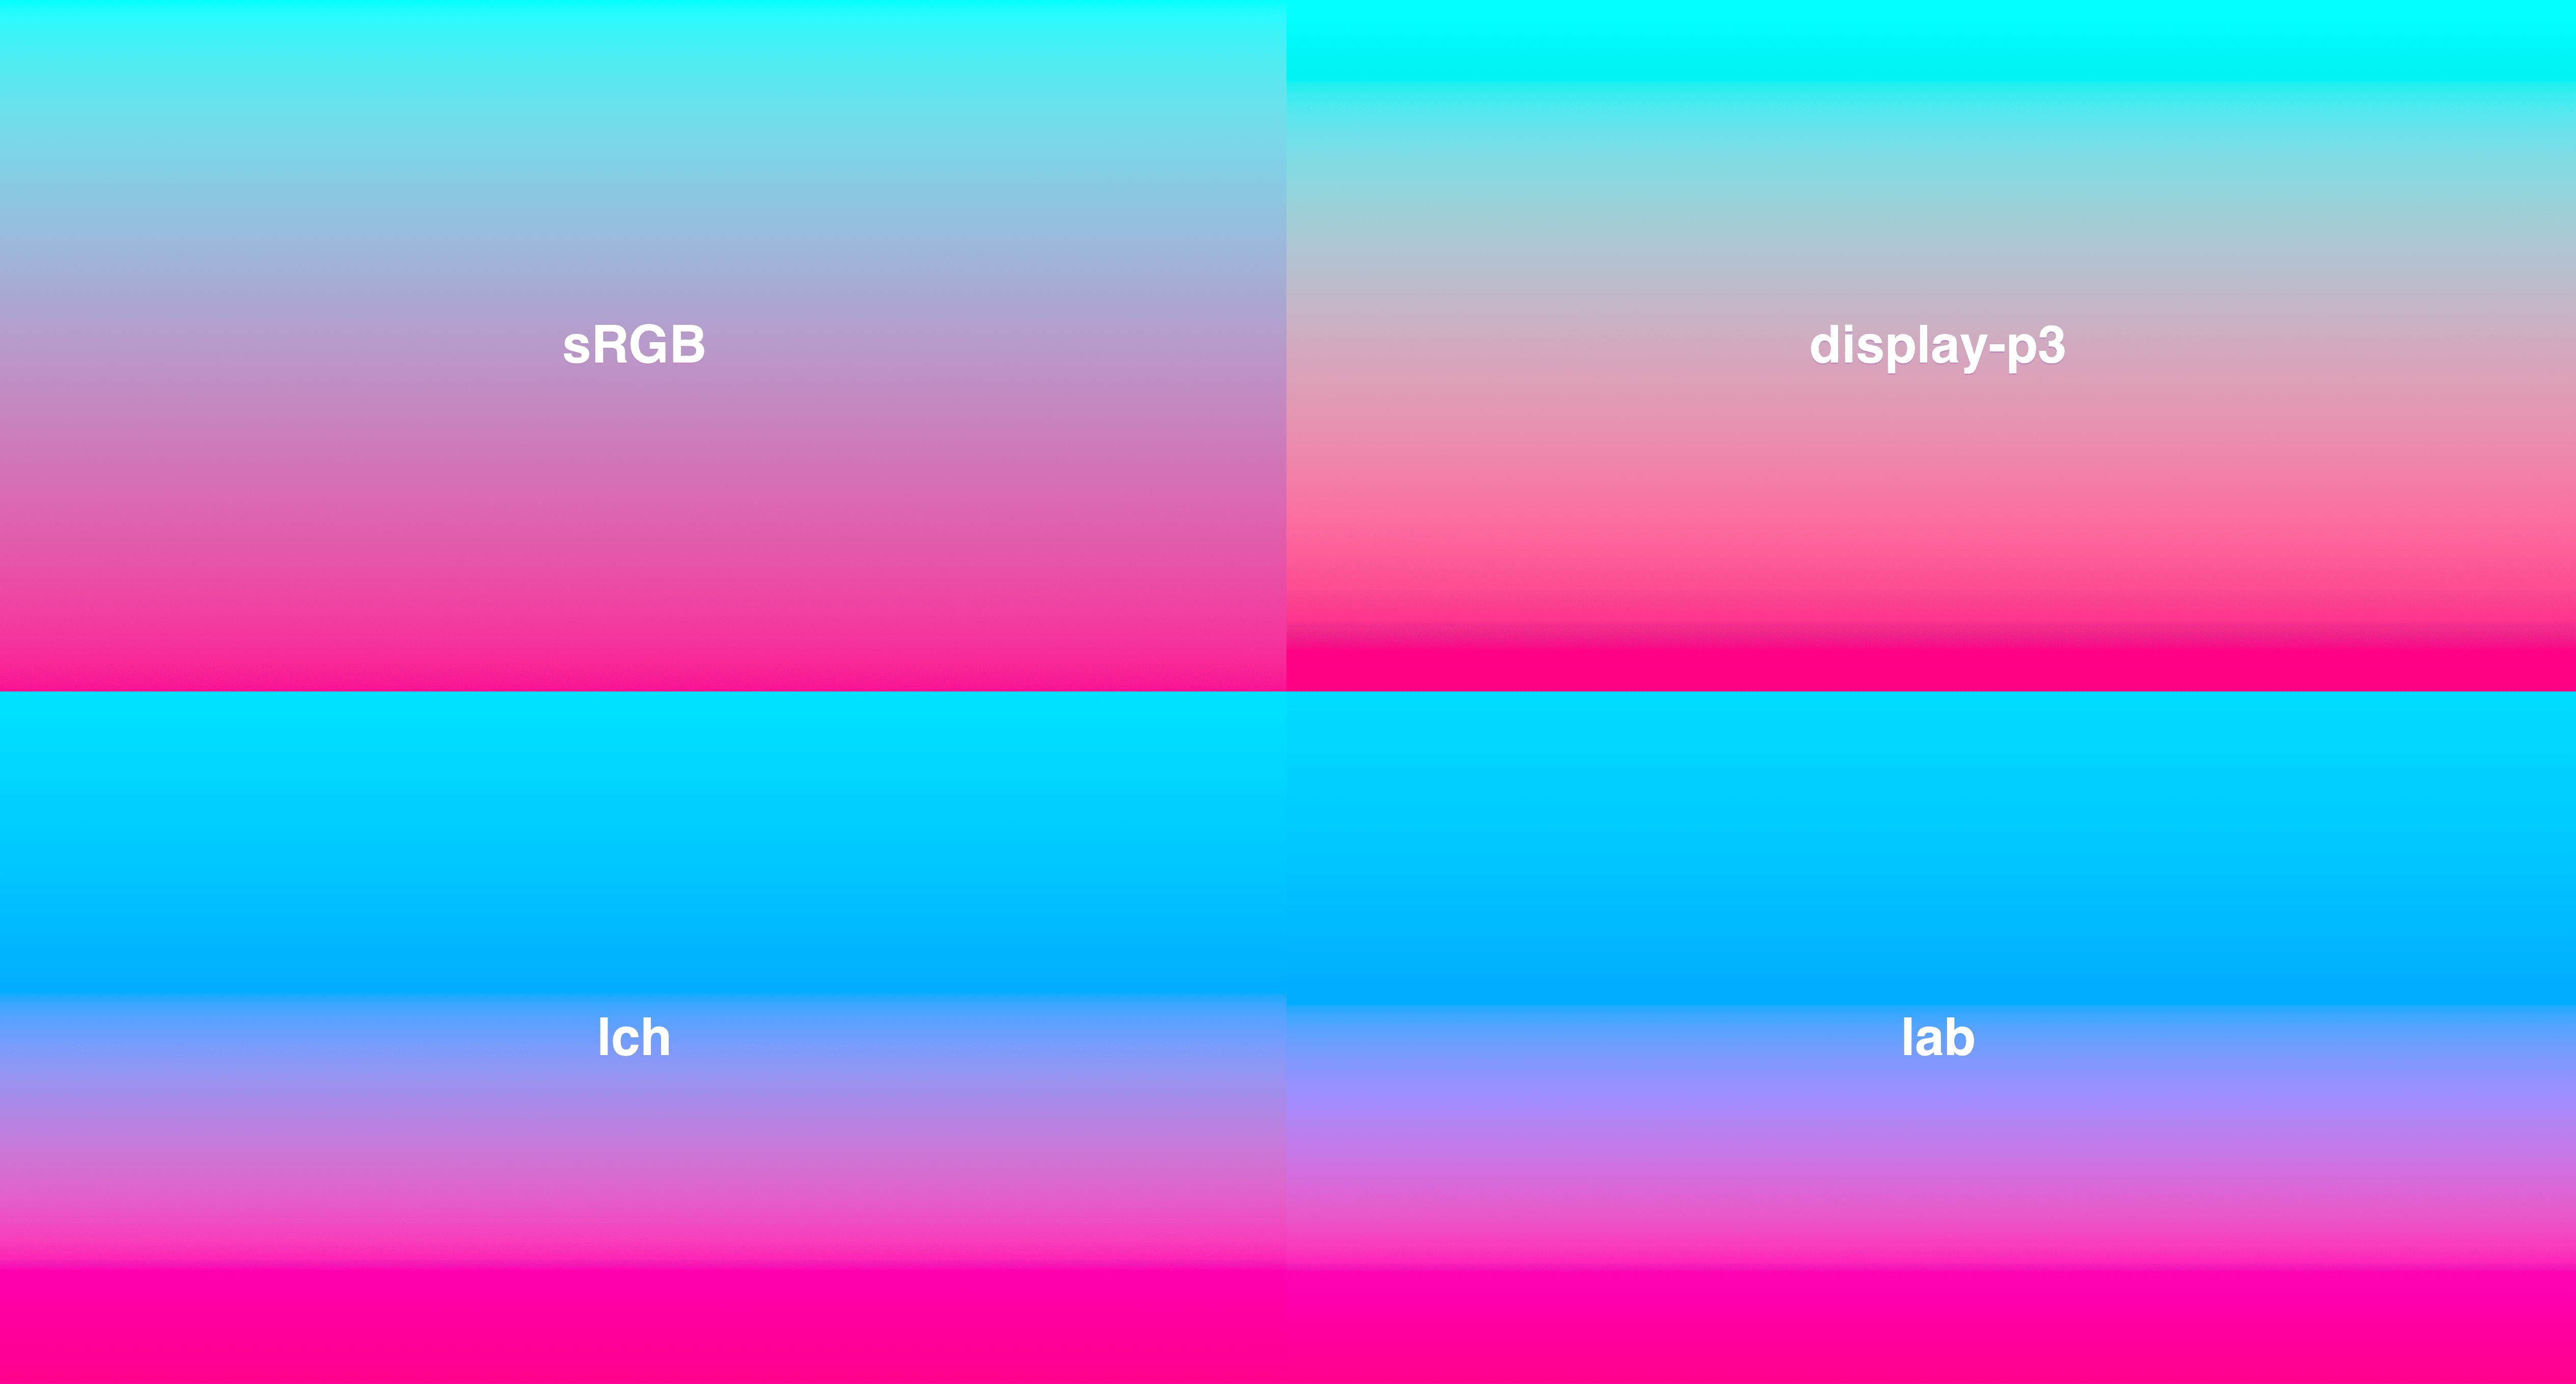 4 Farbverläufe in einem Raster, von Cyan bis tiefrosa. LCH und LAB haben eine konsistentere Lebendigkeit, während sRGB in der Mitte etwas entsättigt ist.